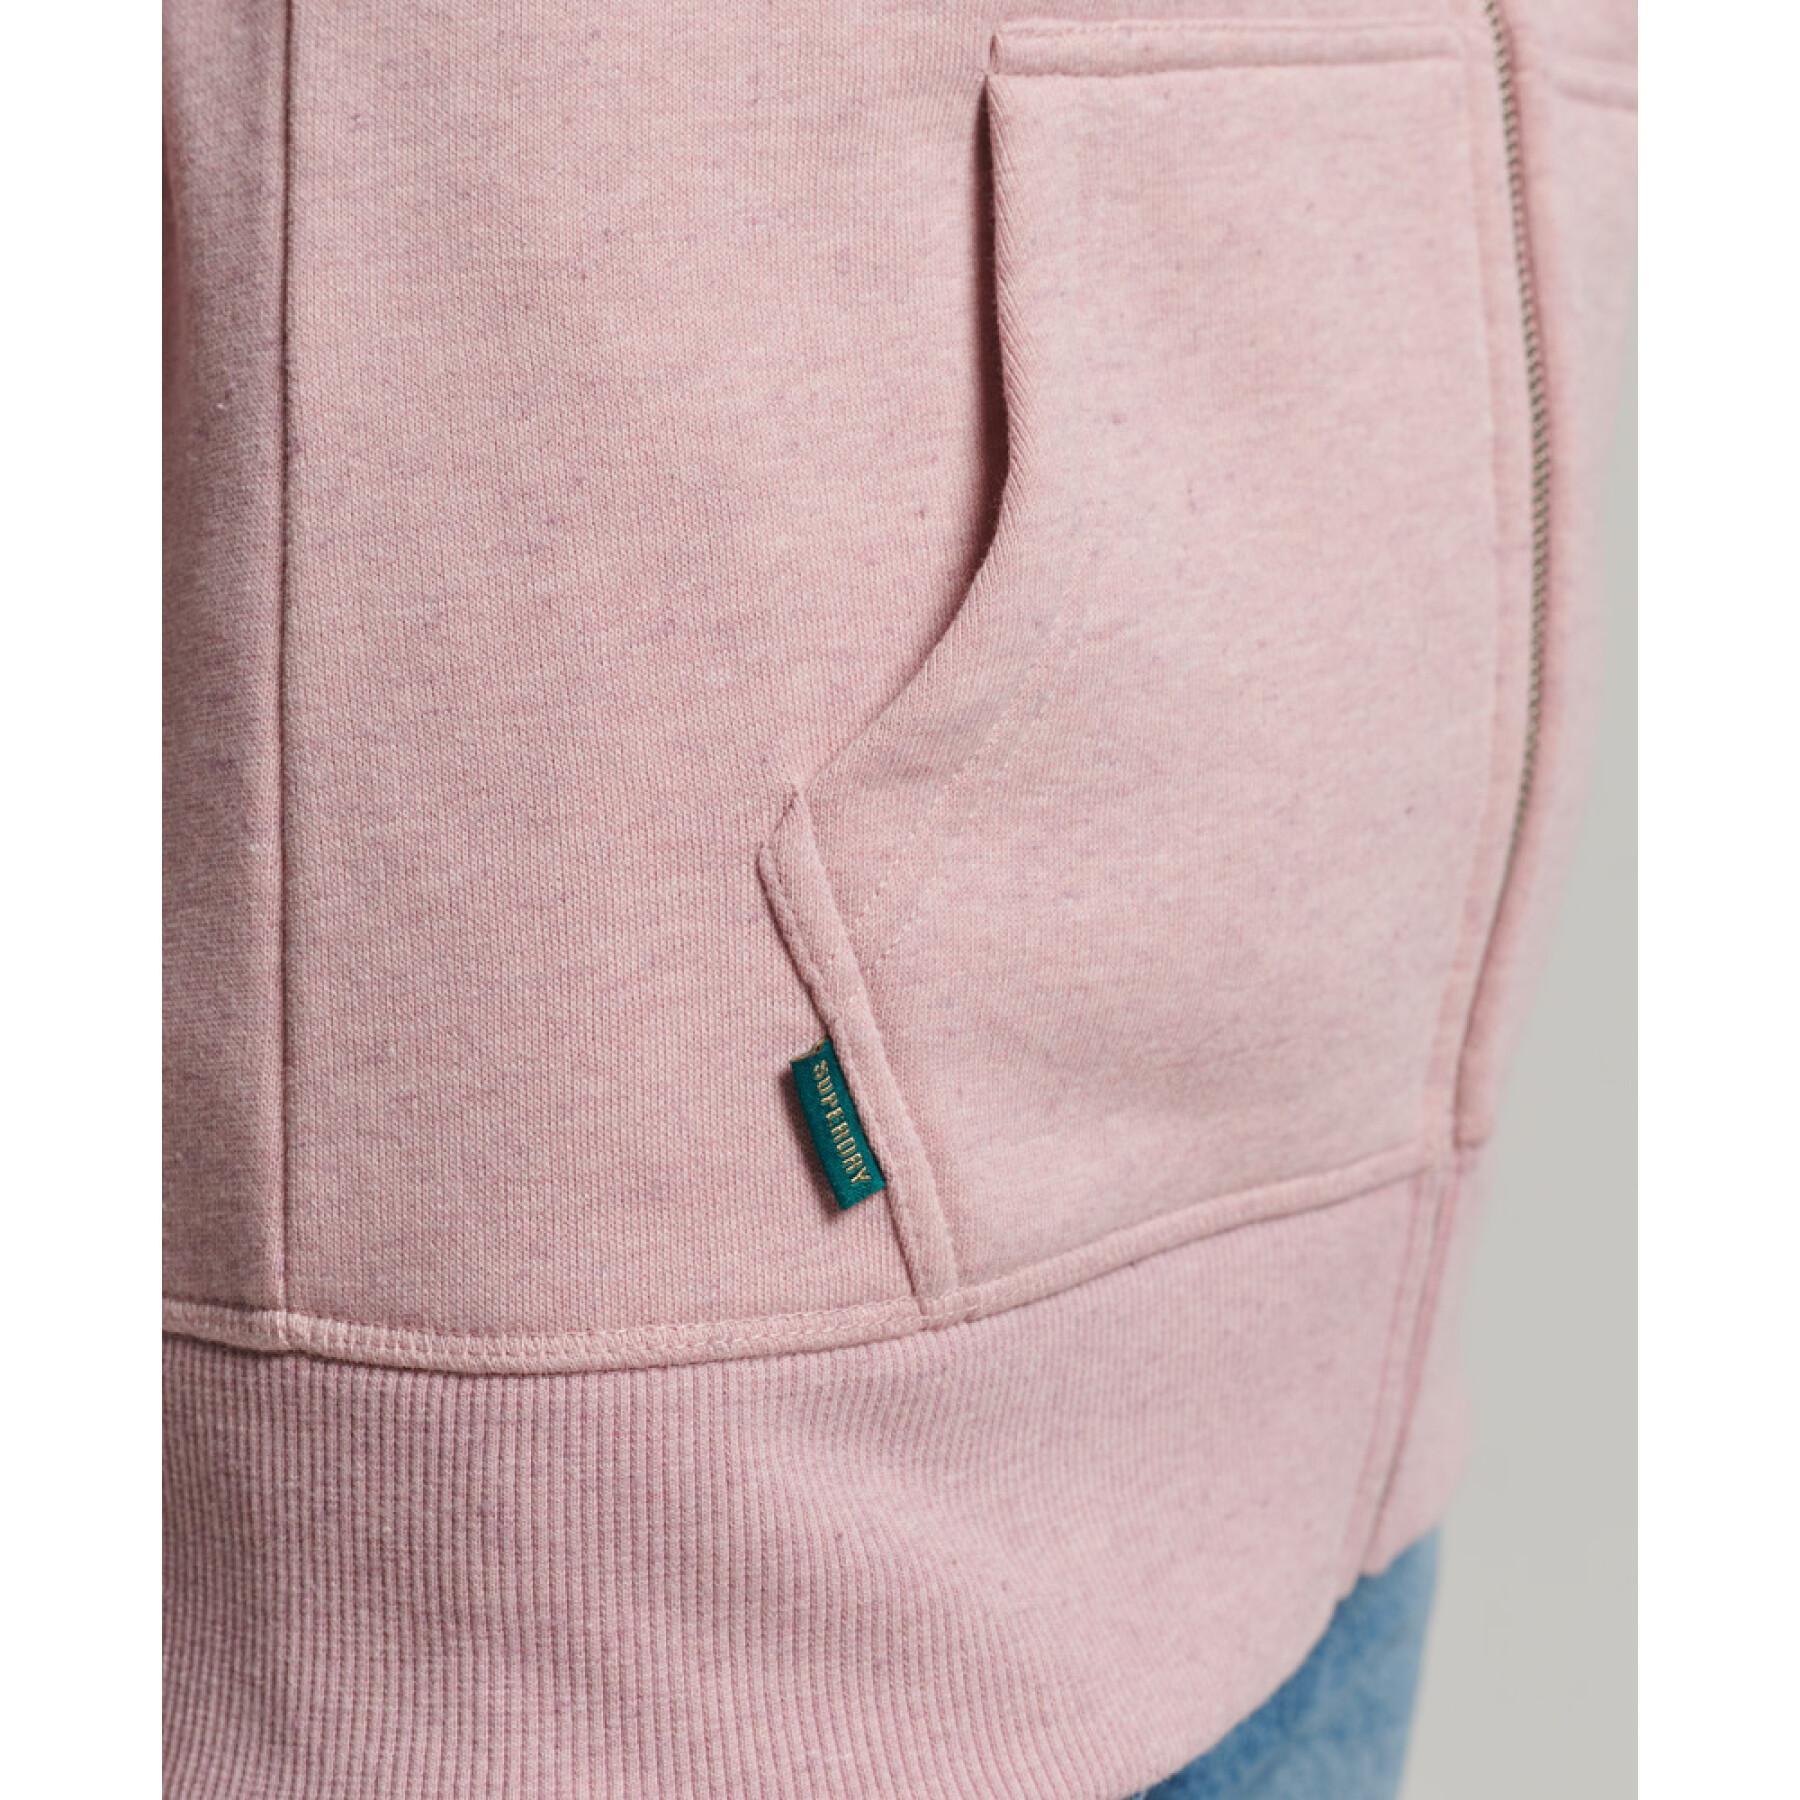 Sweatshirt à capuche zippé coton bio femme Superdry Vintage Logo